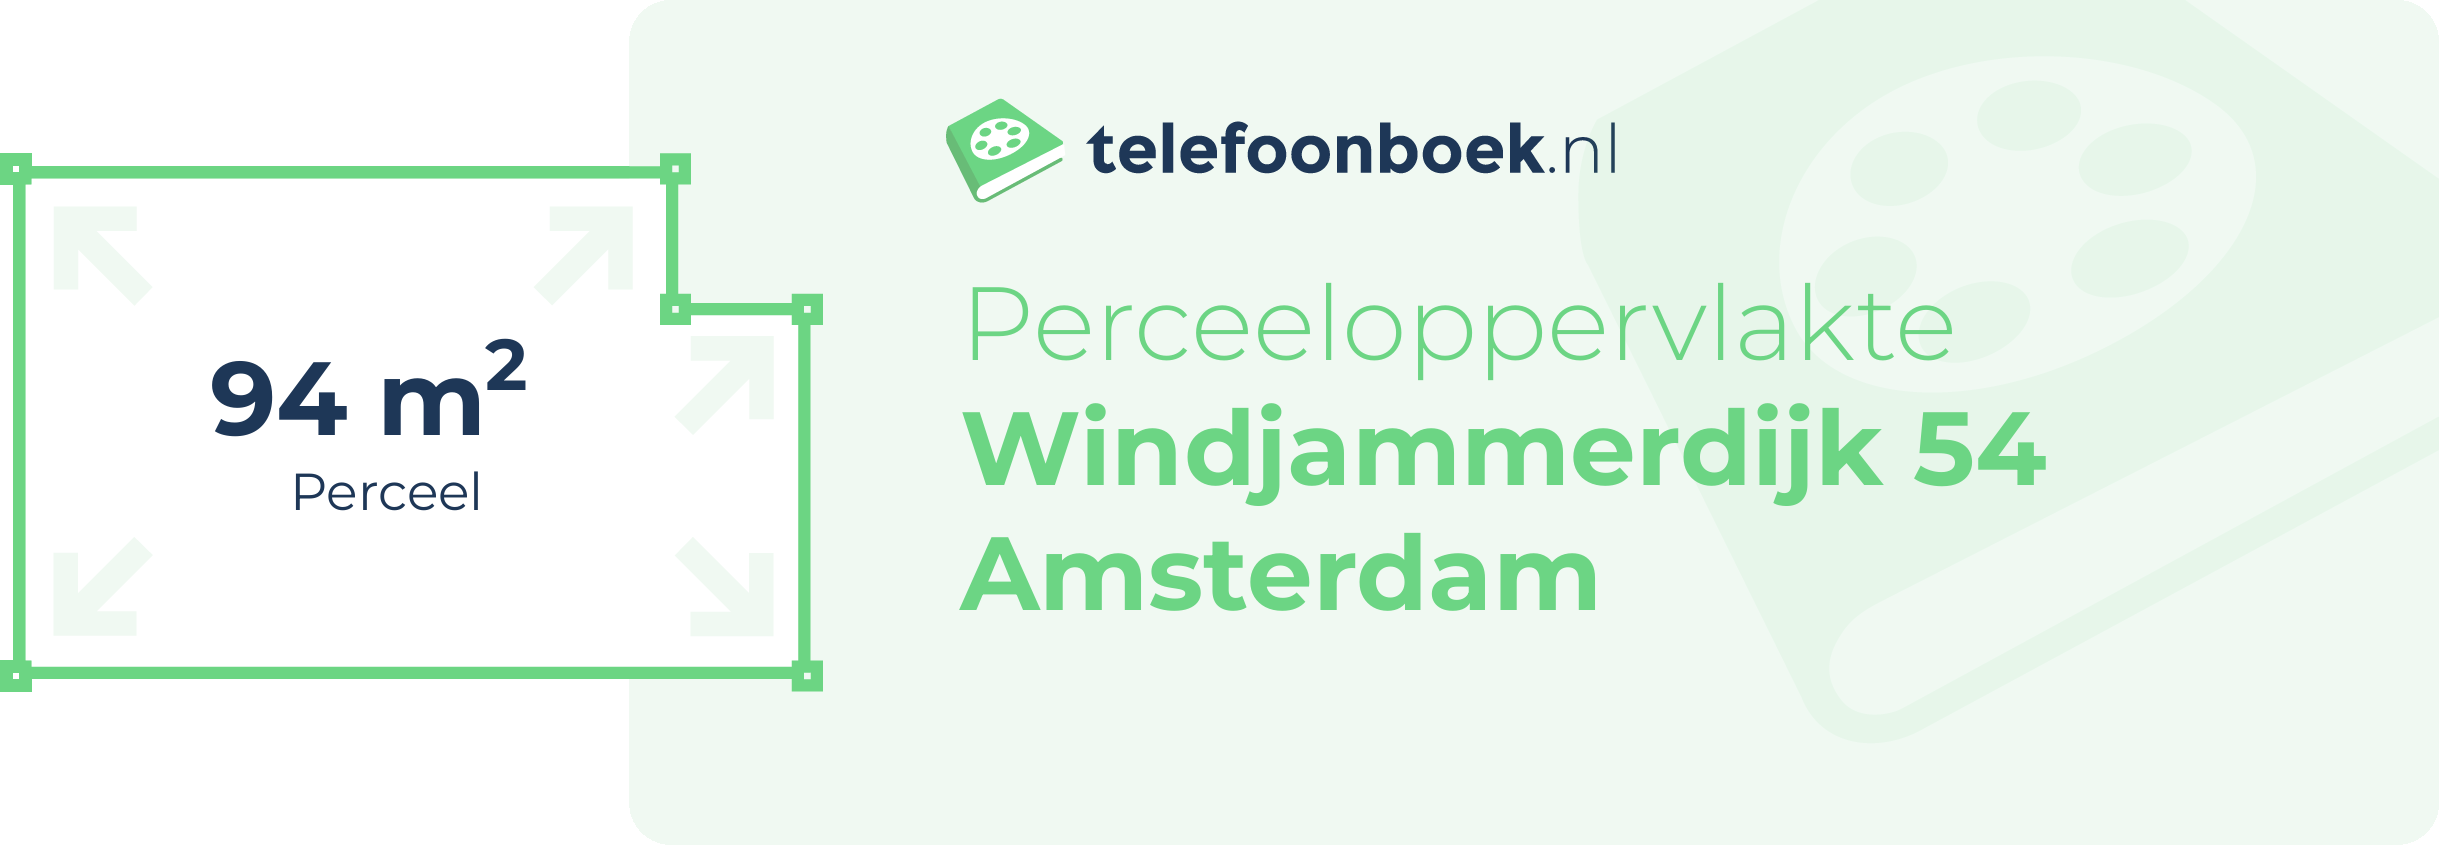 Perceeloppervlakte Windjammerdijk 54 Amsterdam